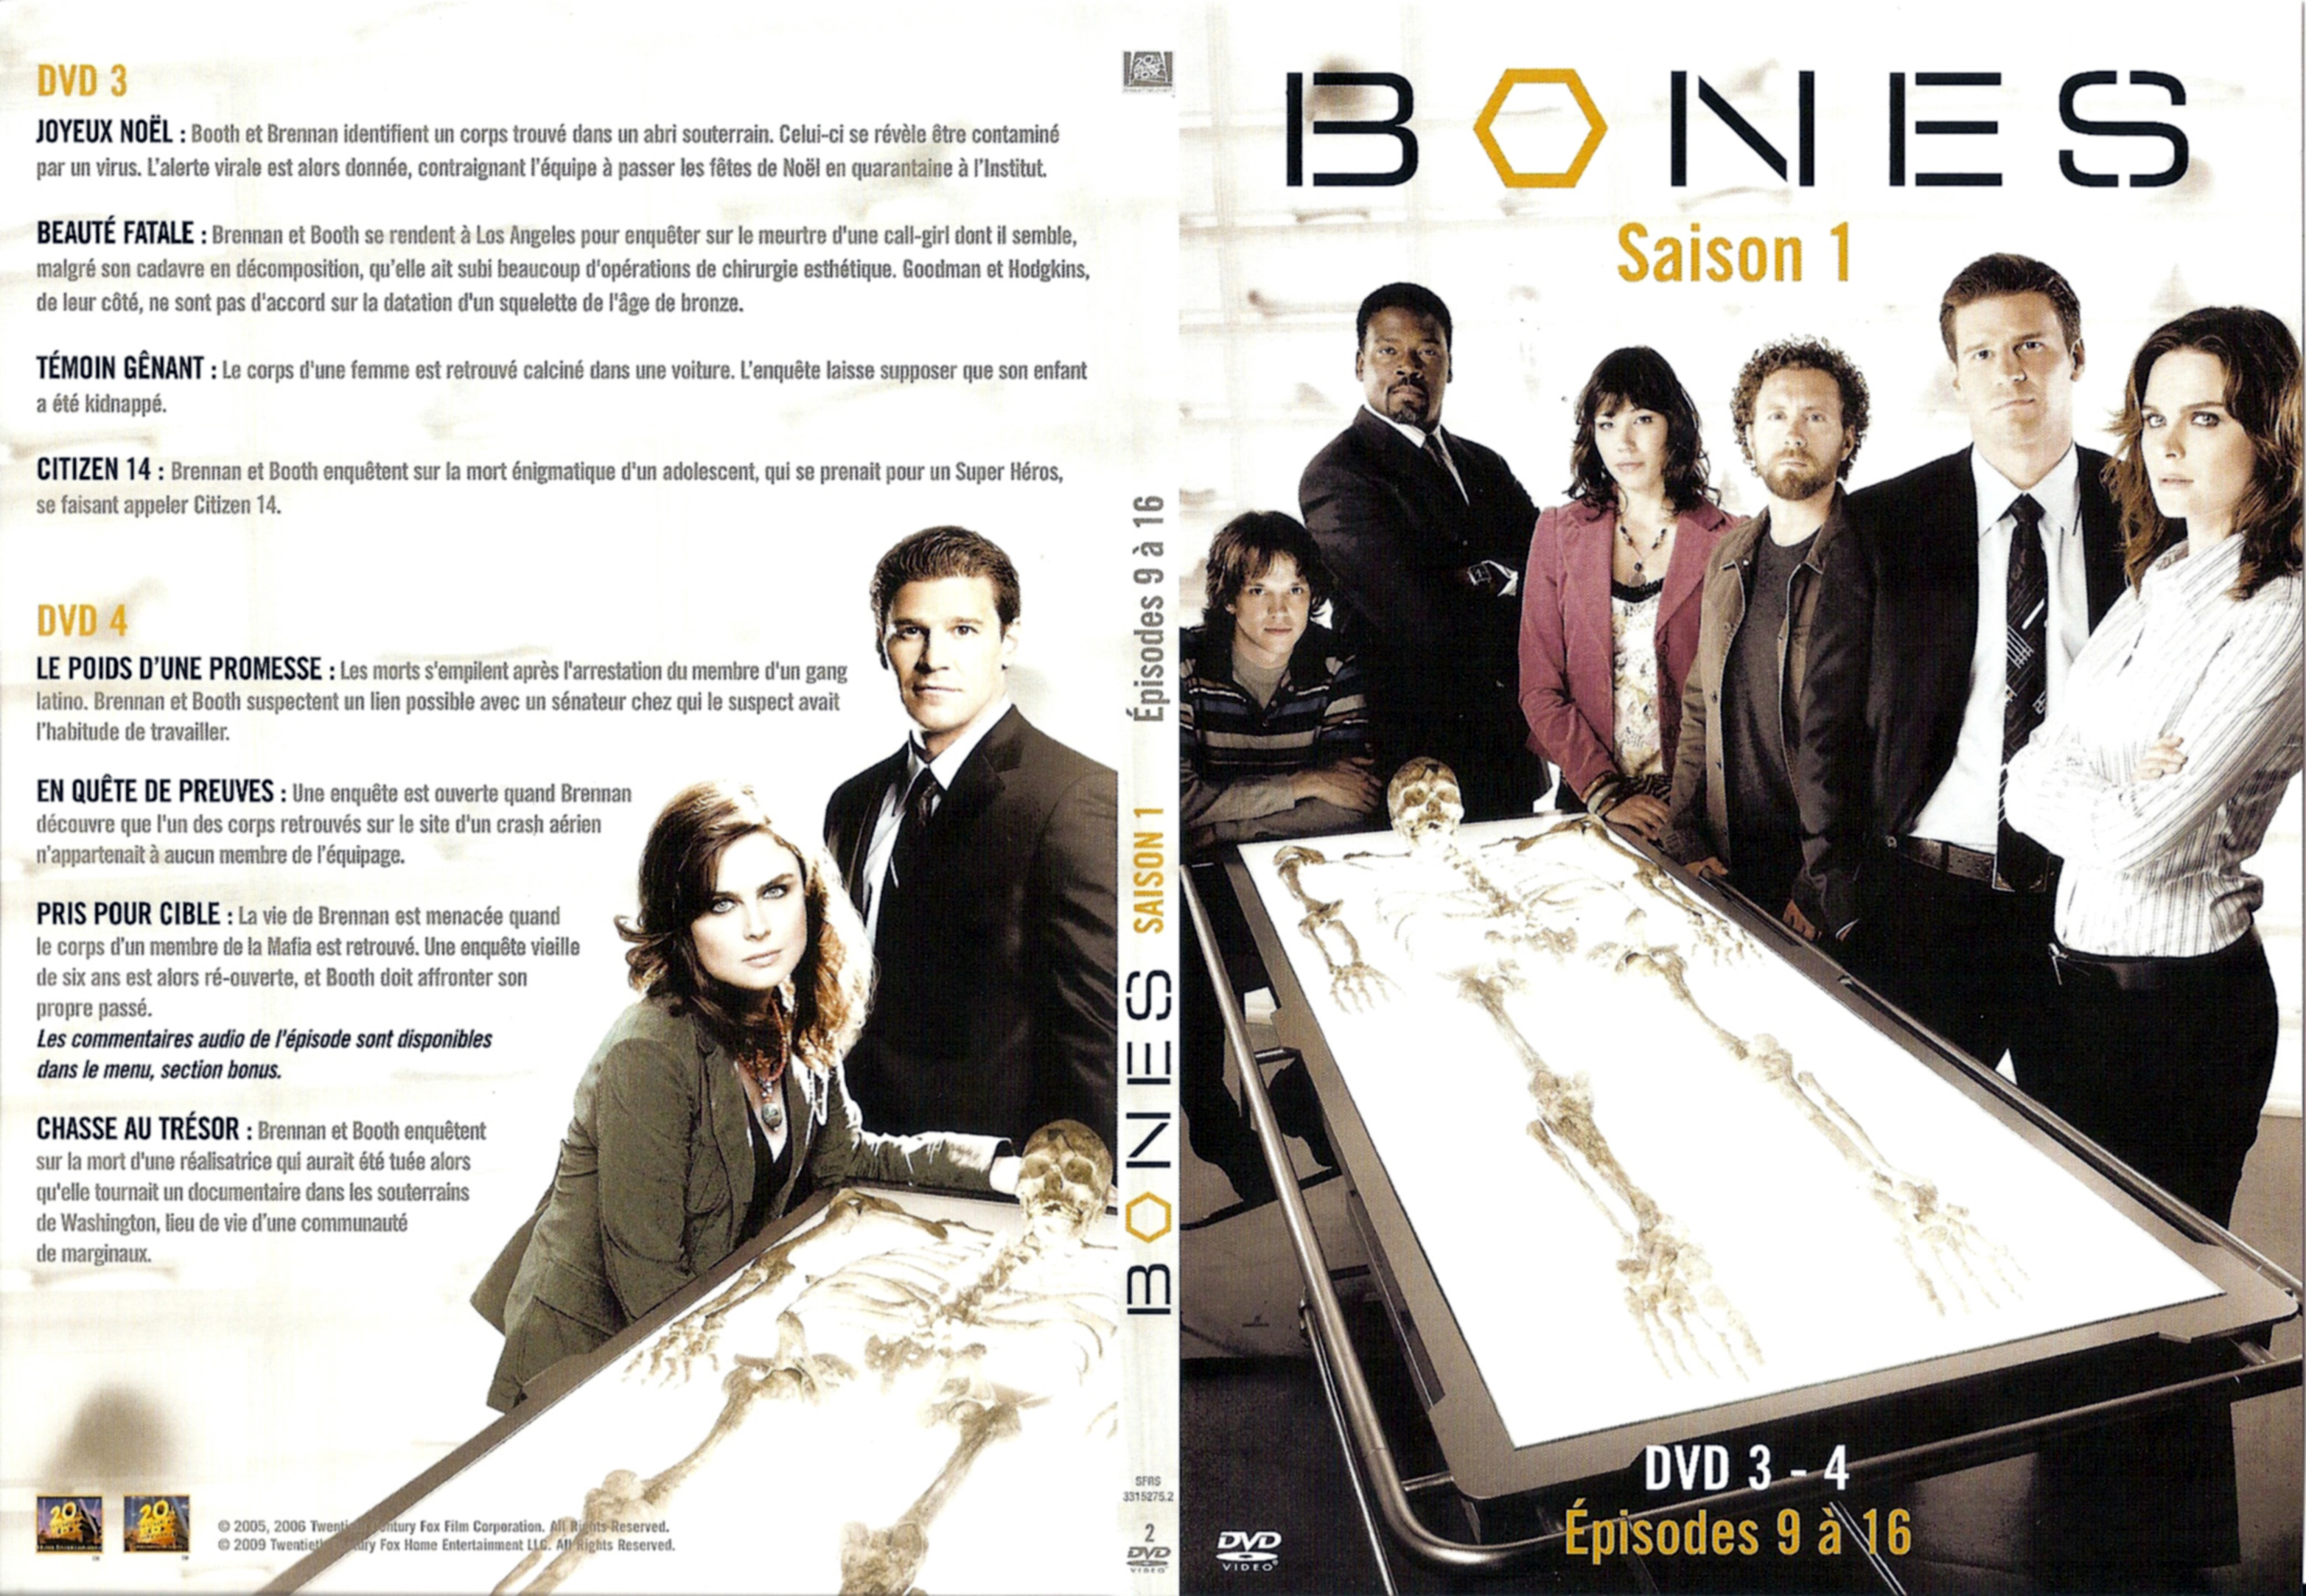 Jaquette DVD Bones Saison 1 DVD 2